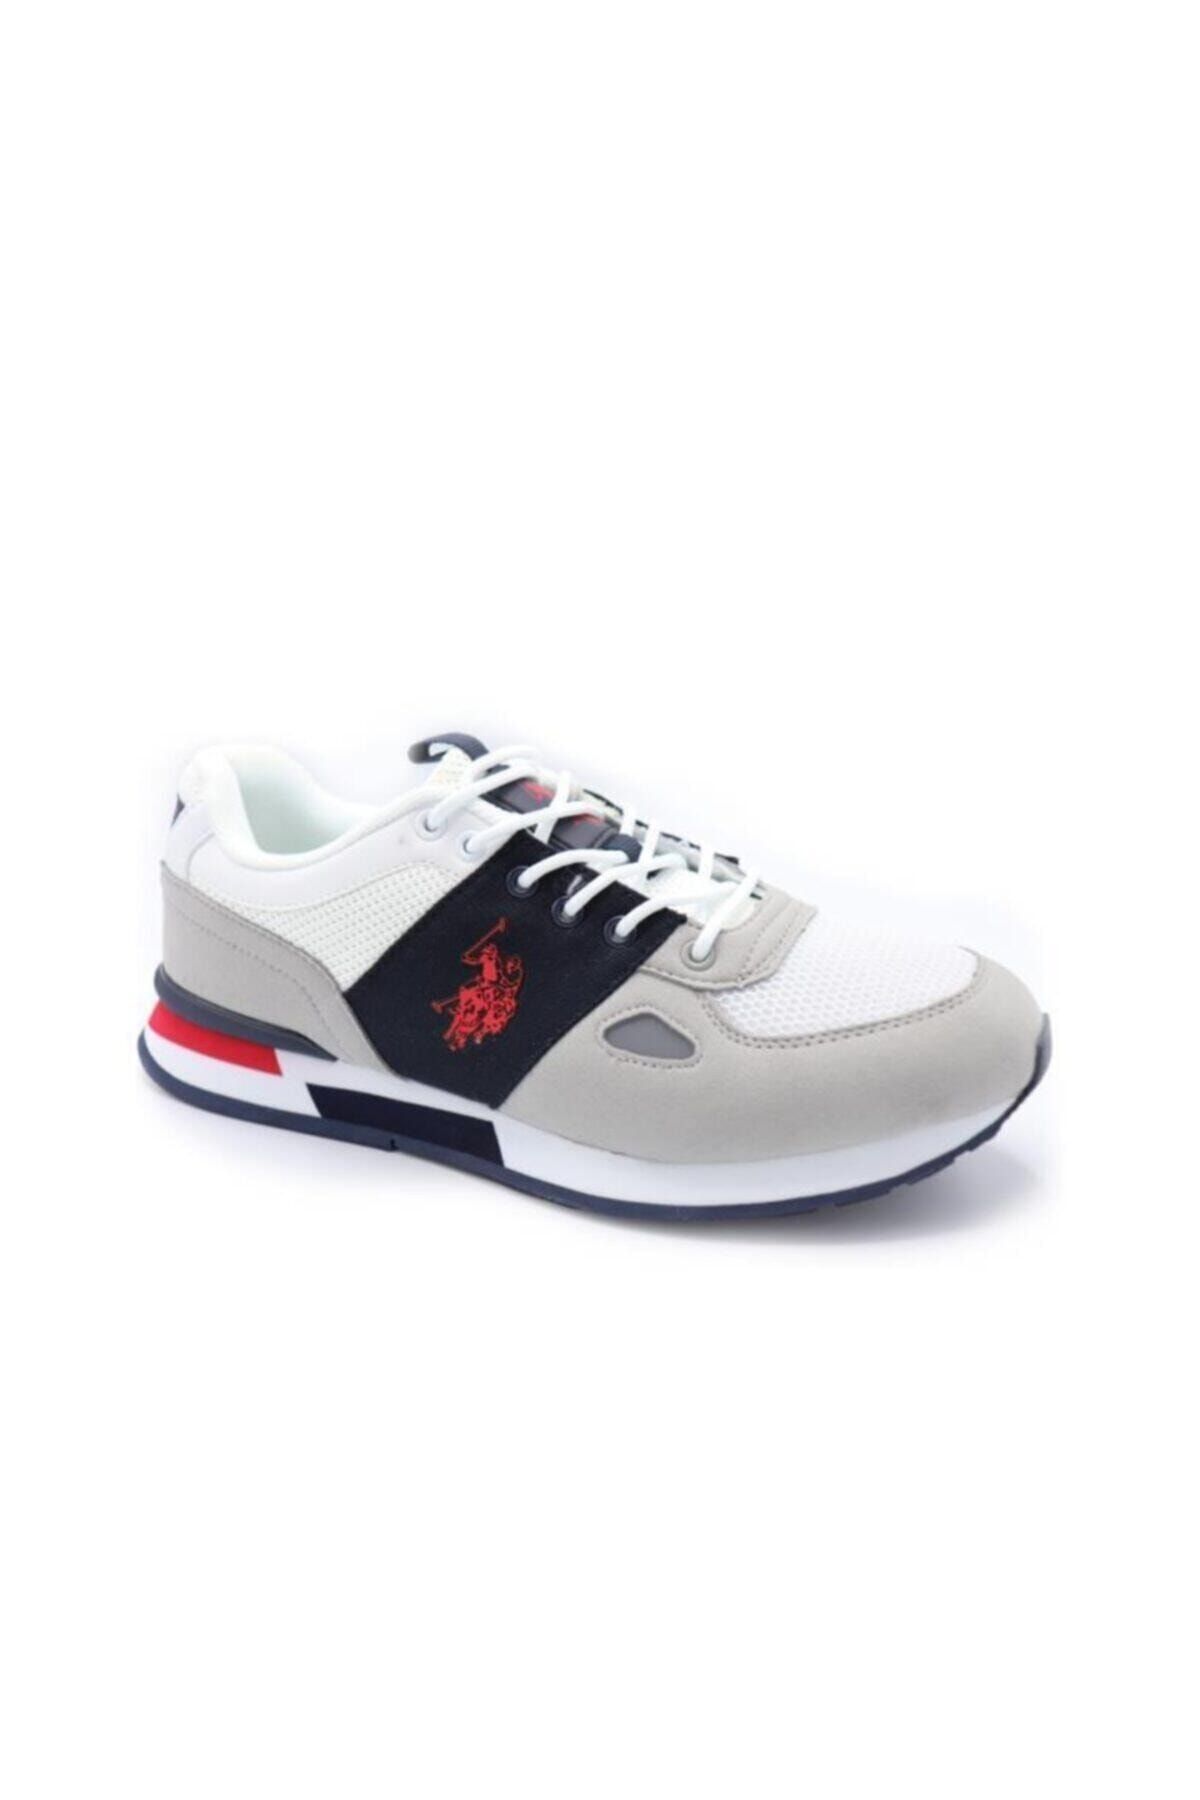 U.S. Polo Assn. BENTLEY Beyaz Erkek Sneaker Ayakkabı 100489307